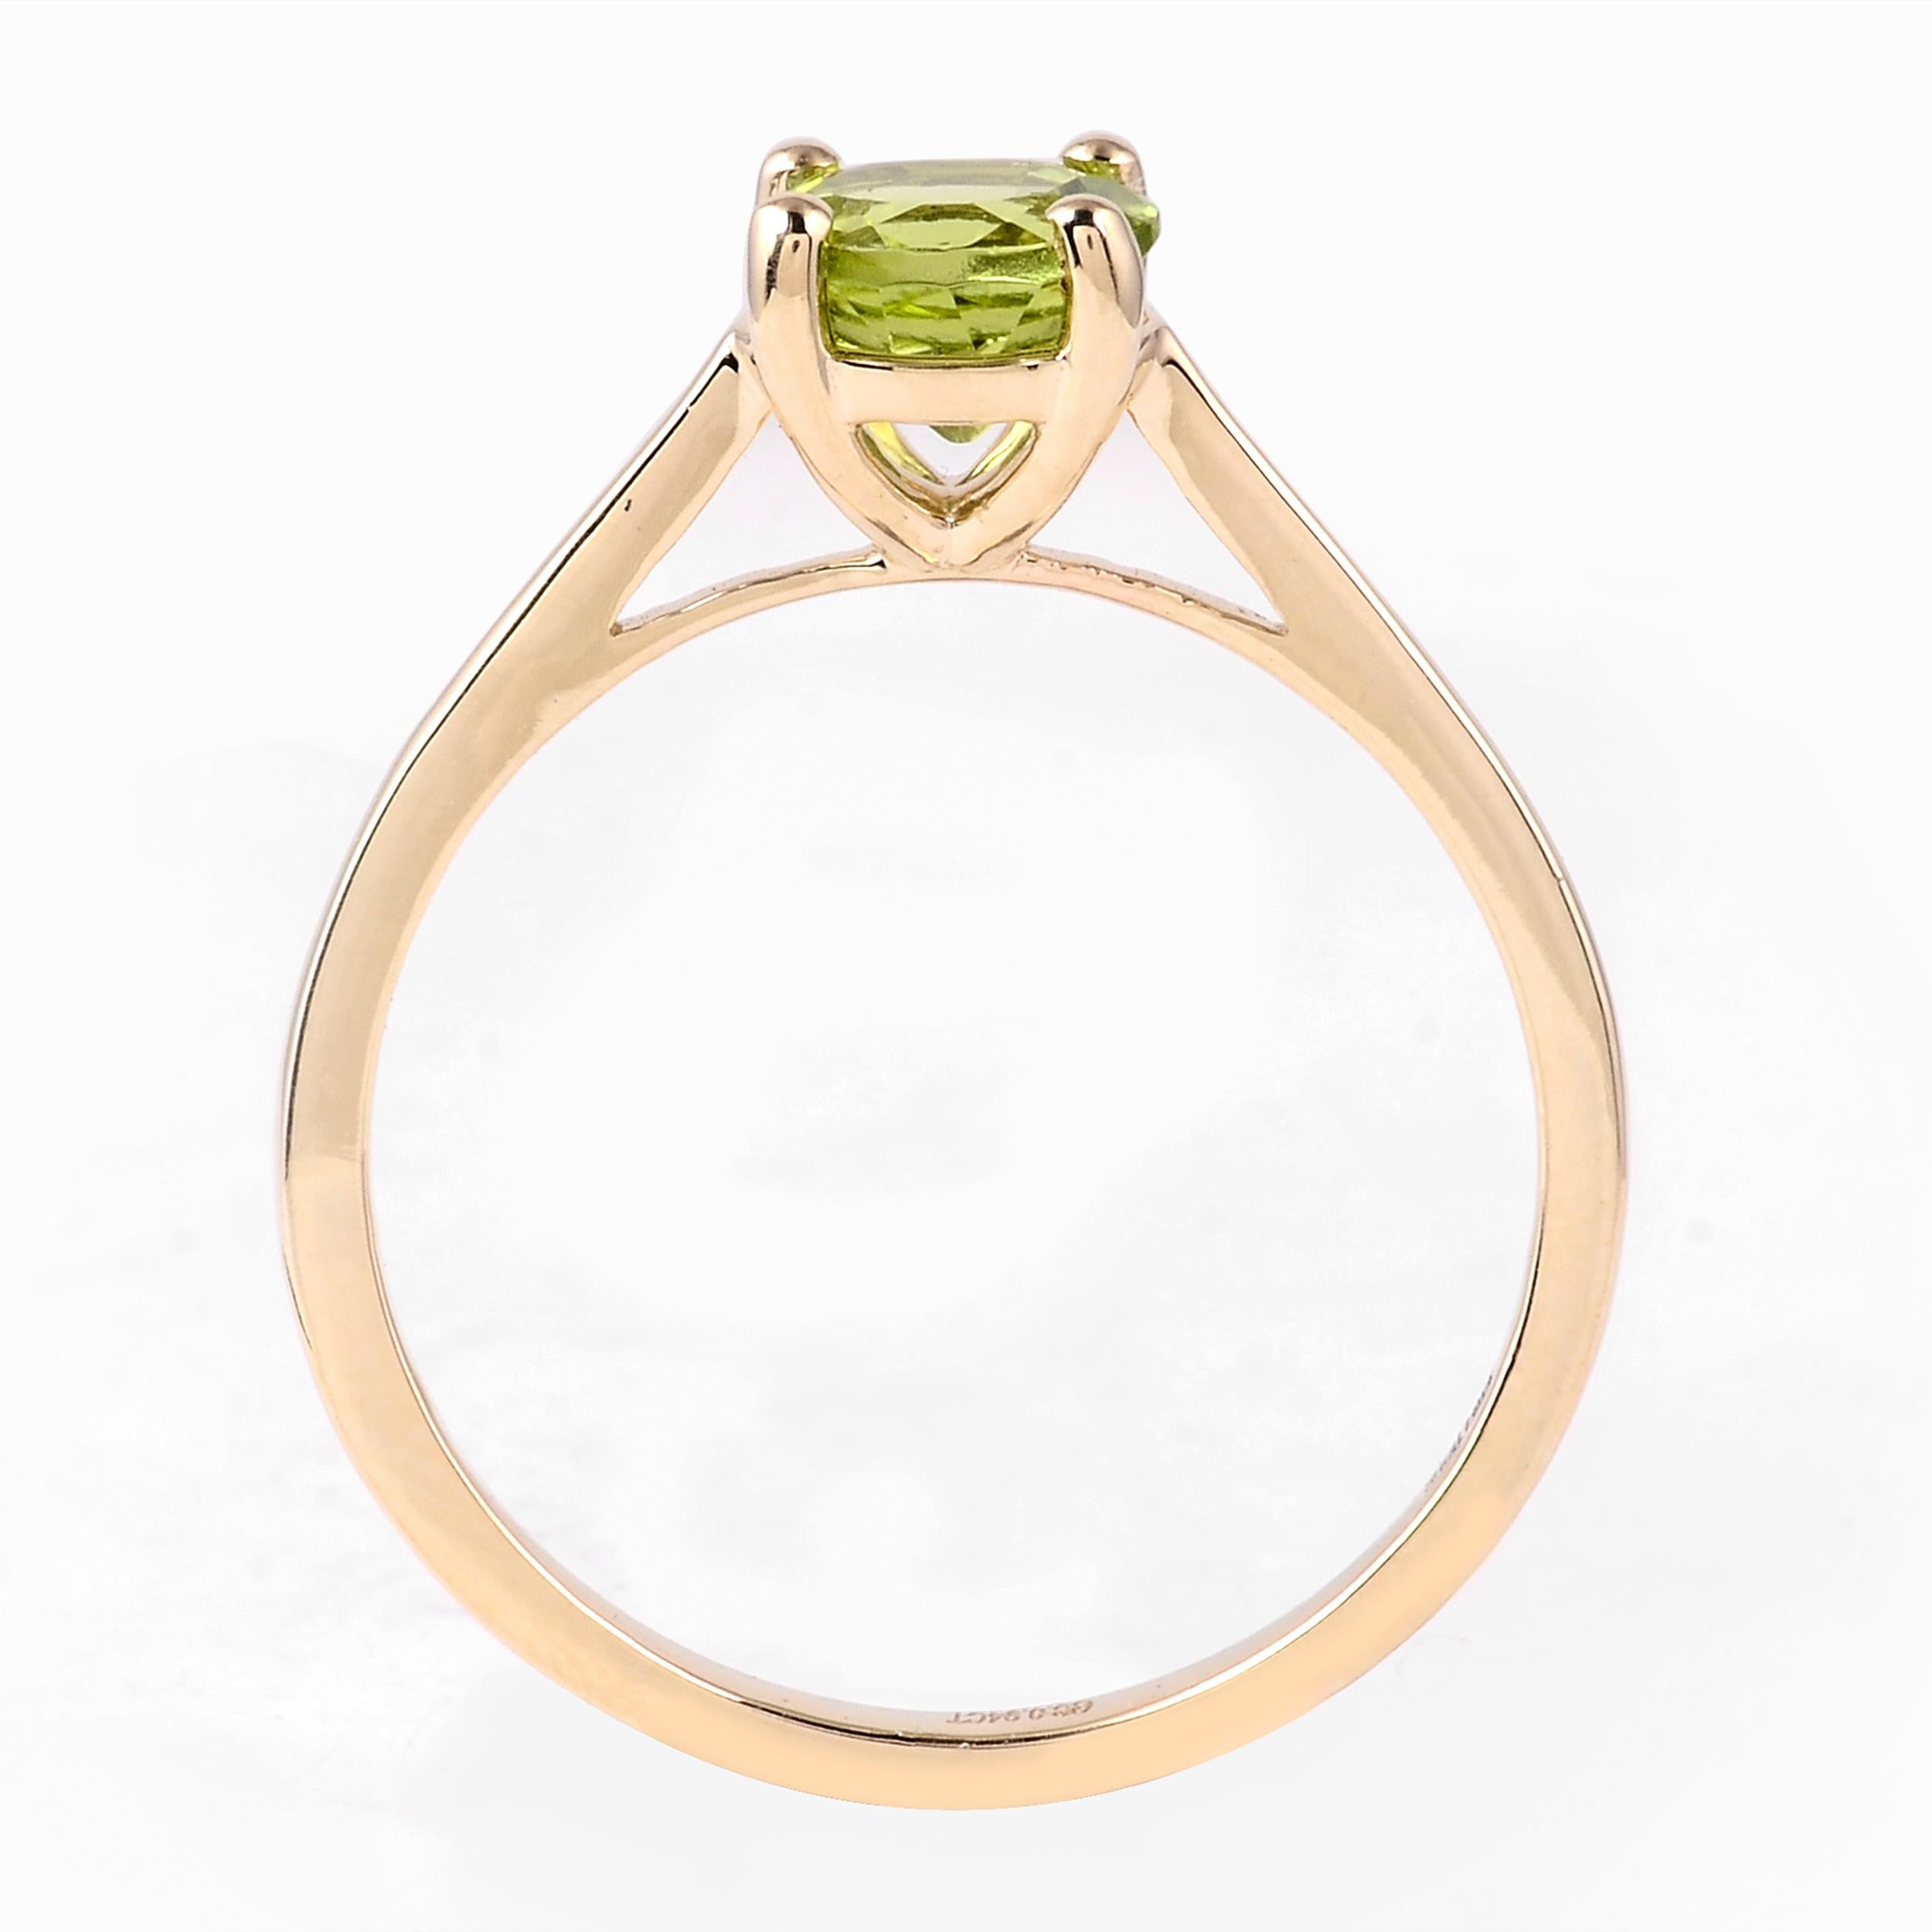 Erhöhen Sie Ihre Schmucksammlung mit dem zauberhaften Charme des Harmony in Green Peridot Ring. Als Marke, die die Wunder der Natur zelebriert, präsentieren wir diesen exquisiten Ring als harmonische Ode an die ruhigen Qualitäten des